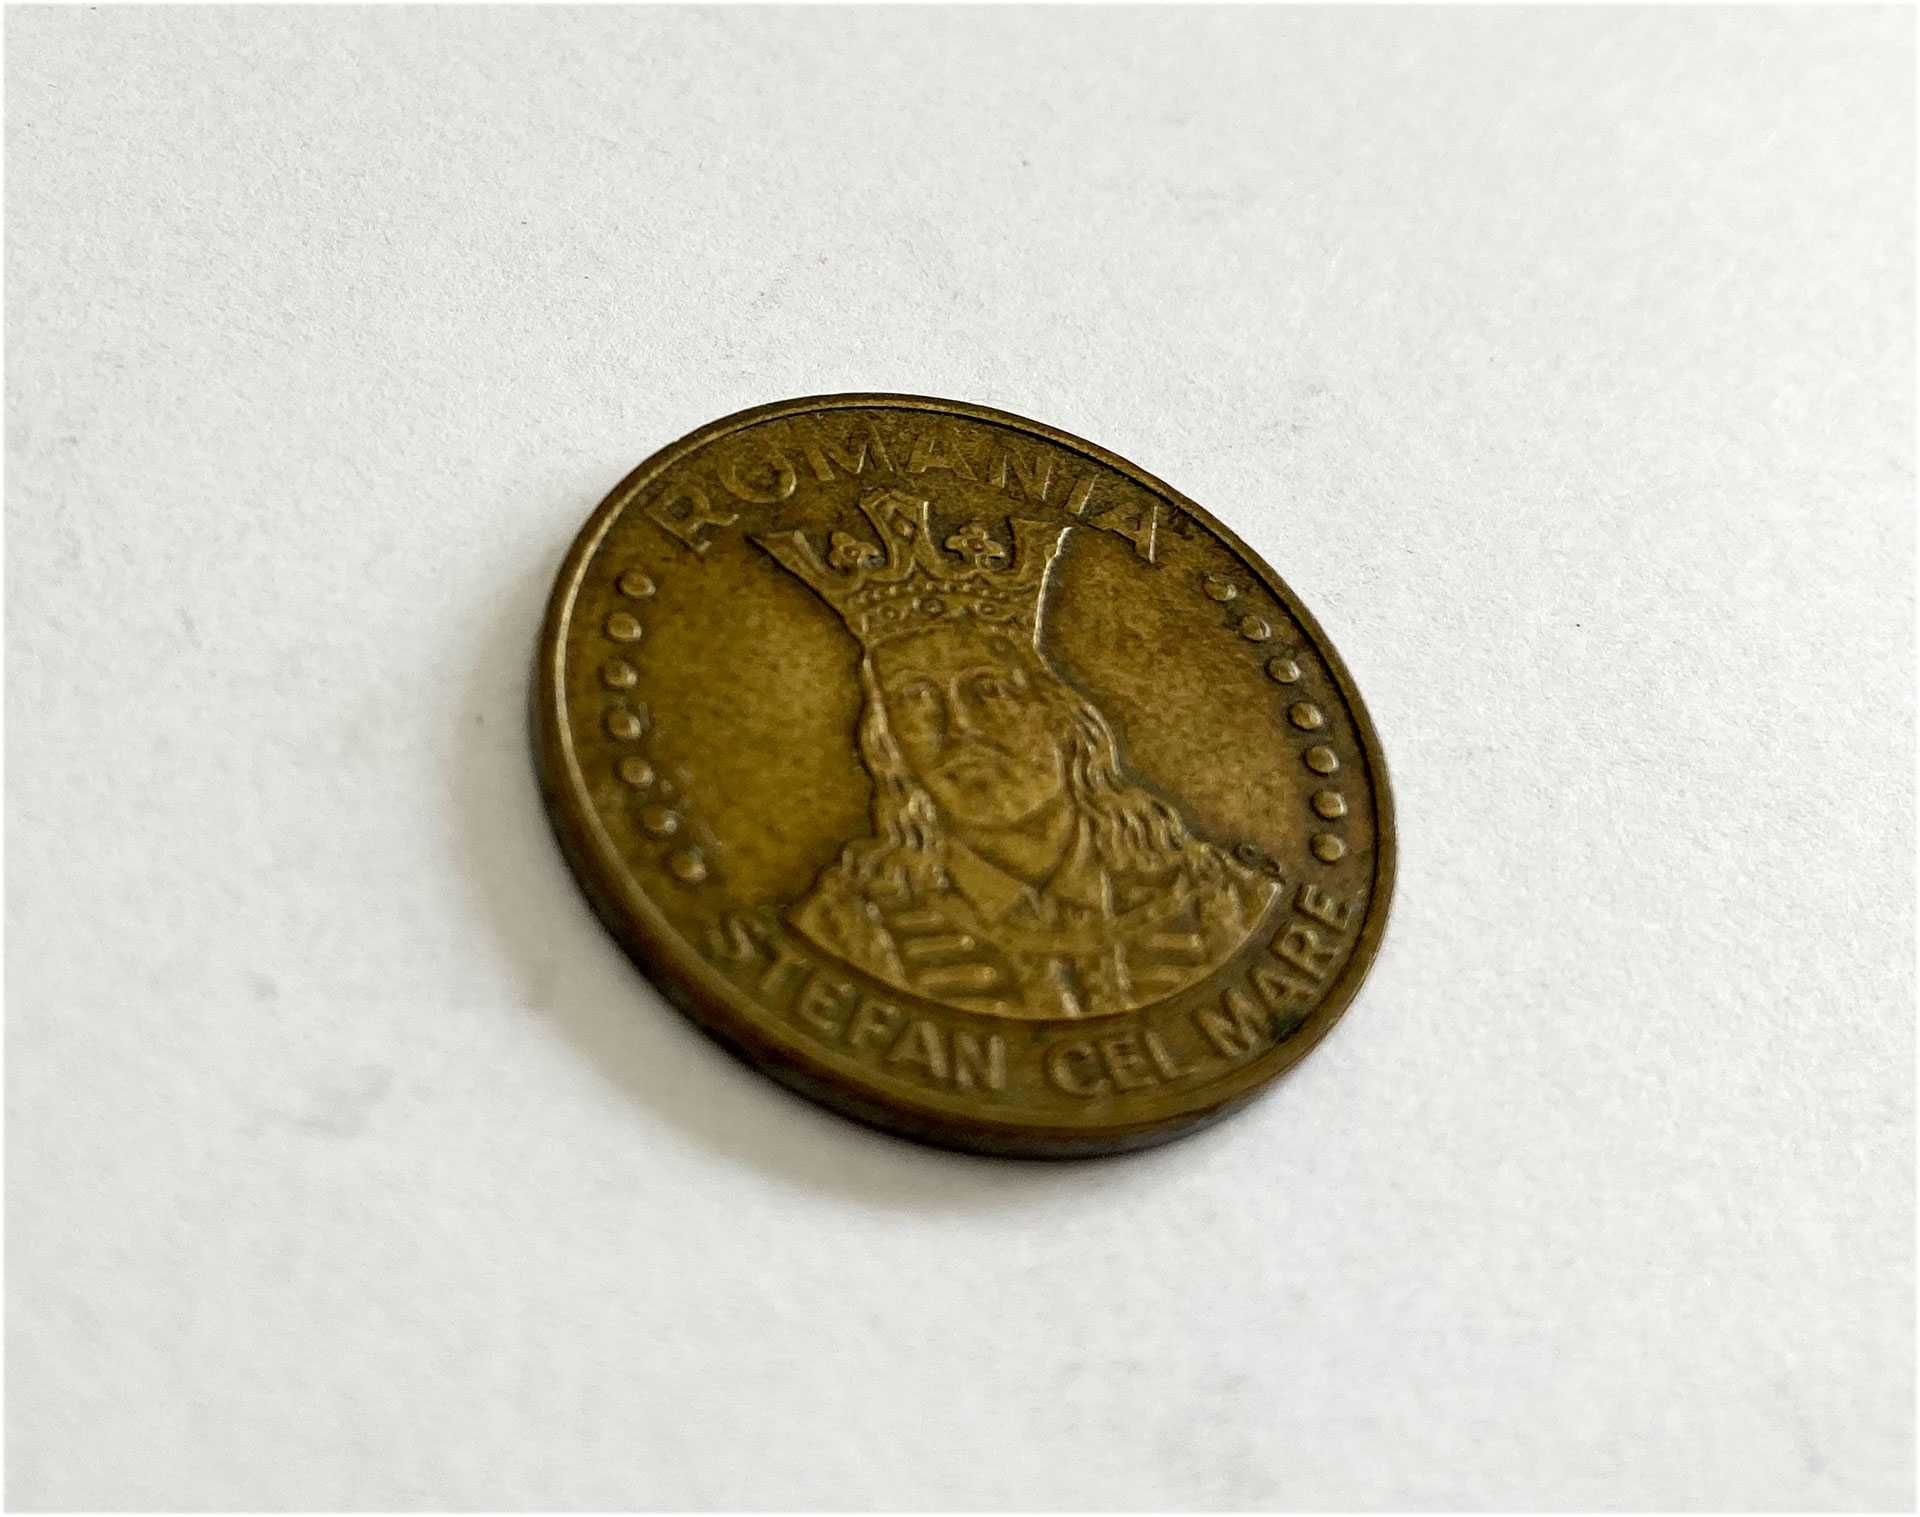 Monede 1 leu, 5 lei, 10 lei, 20 lei, 1992-1994